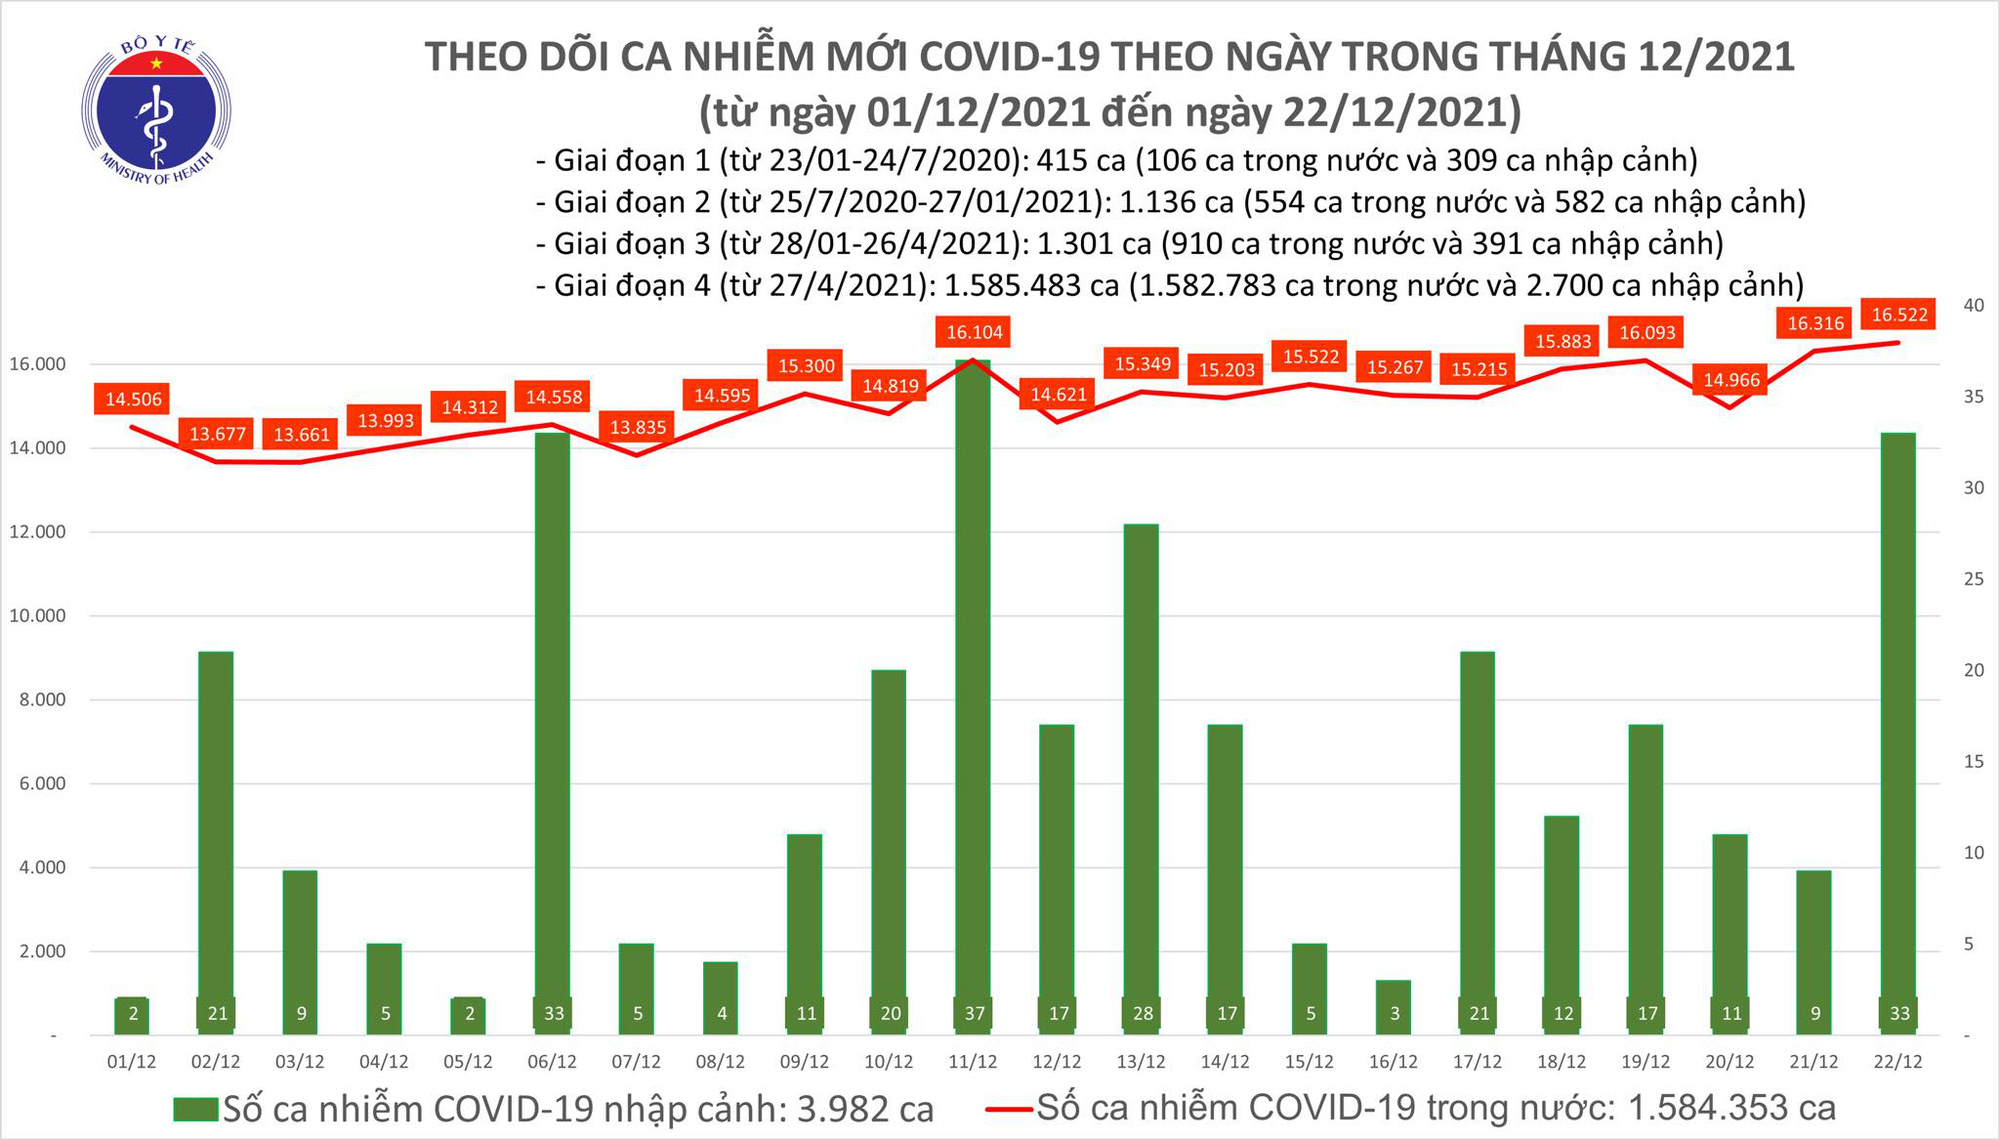 Dịch Covid-19 hôm nay: Thêm 16.555 ca nhiễm mới, Hà Nội có số mắc cao nhất - Ảnh 1.